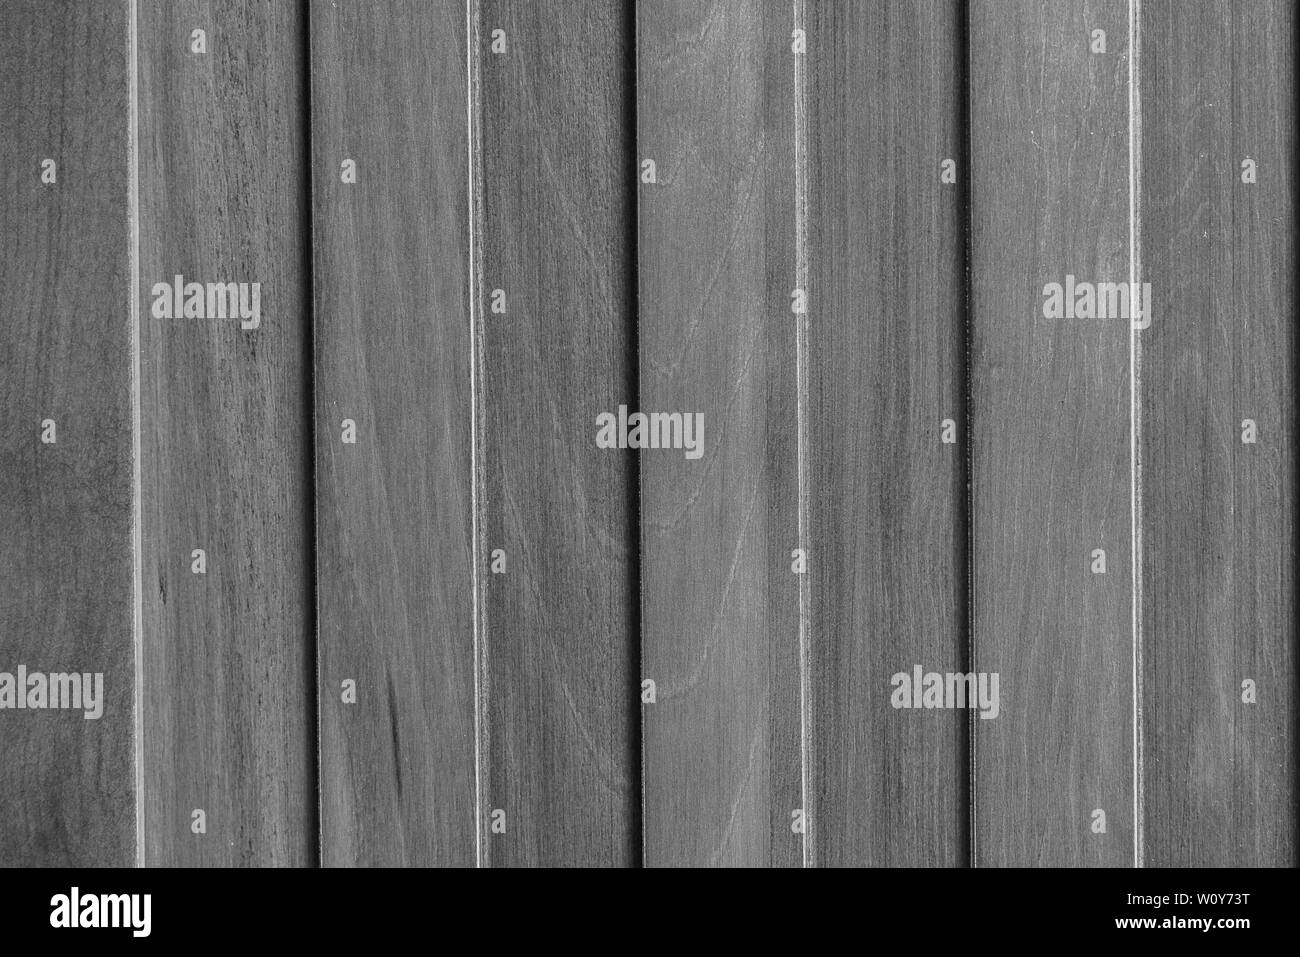 Light gray wooden shelves background Stock Photo